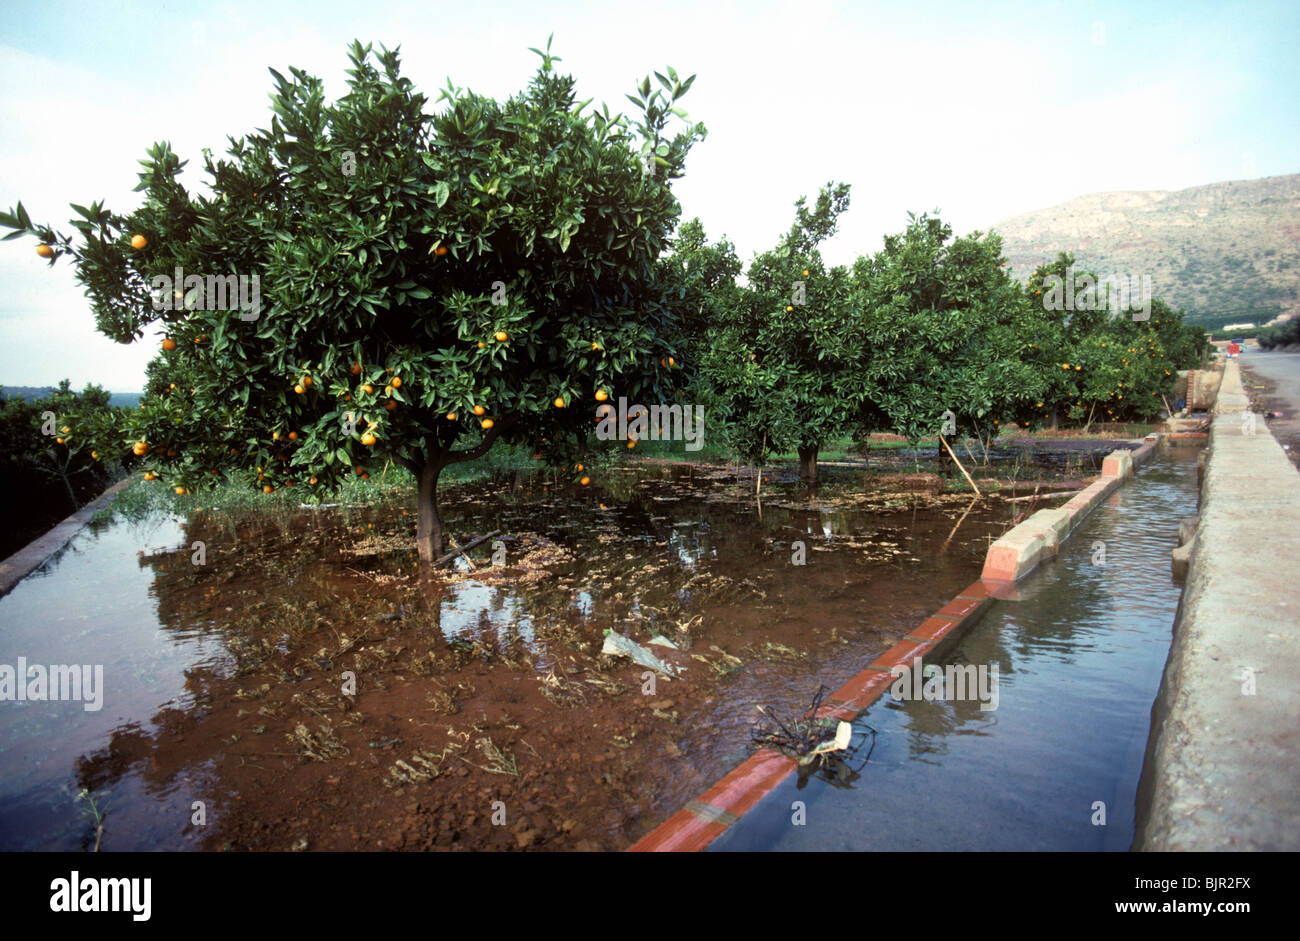 El riego por inundación de un huerto de clementine desborde de canales de agua, Valencia Foto de stock